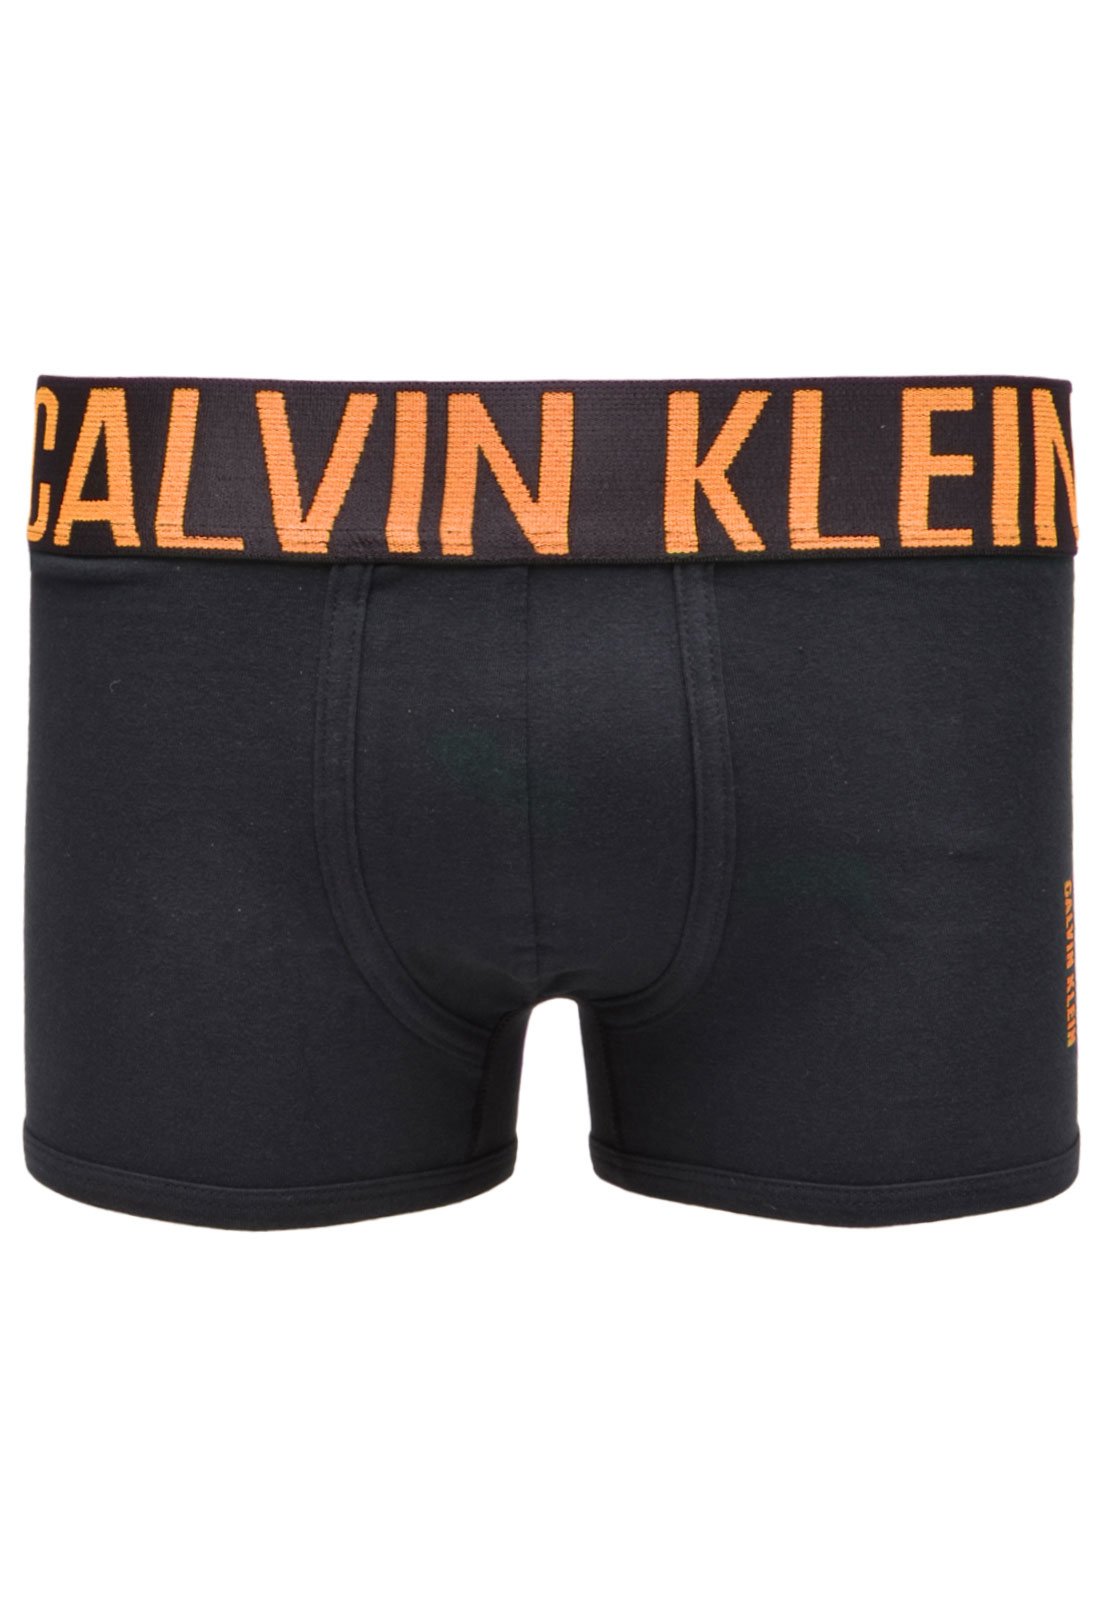 Calvin Klein Briefs Intense Power in Orange